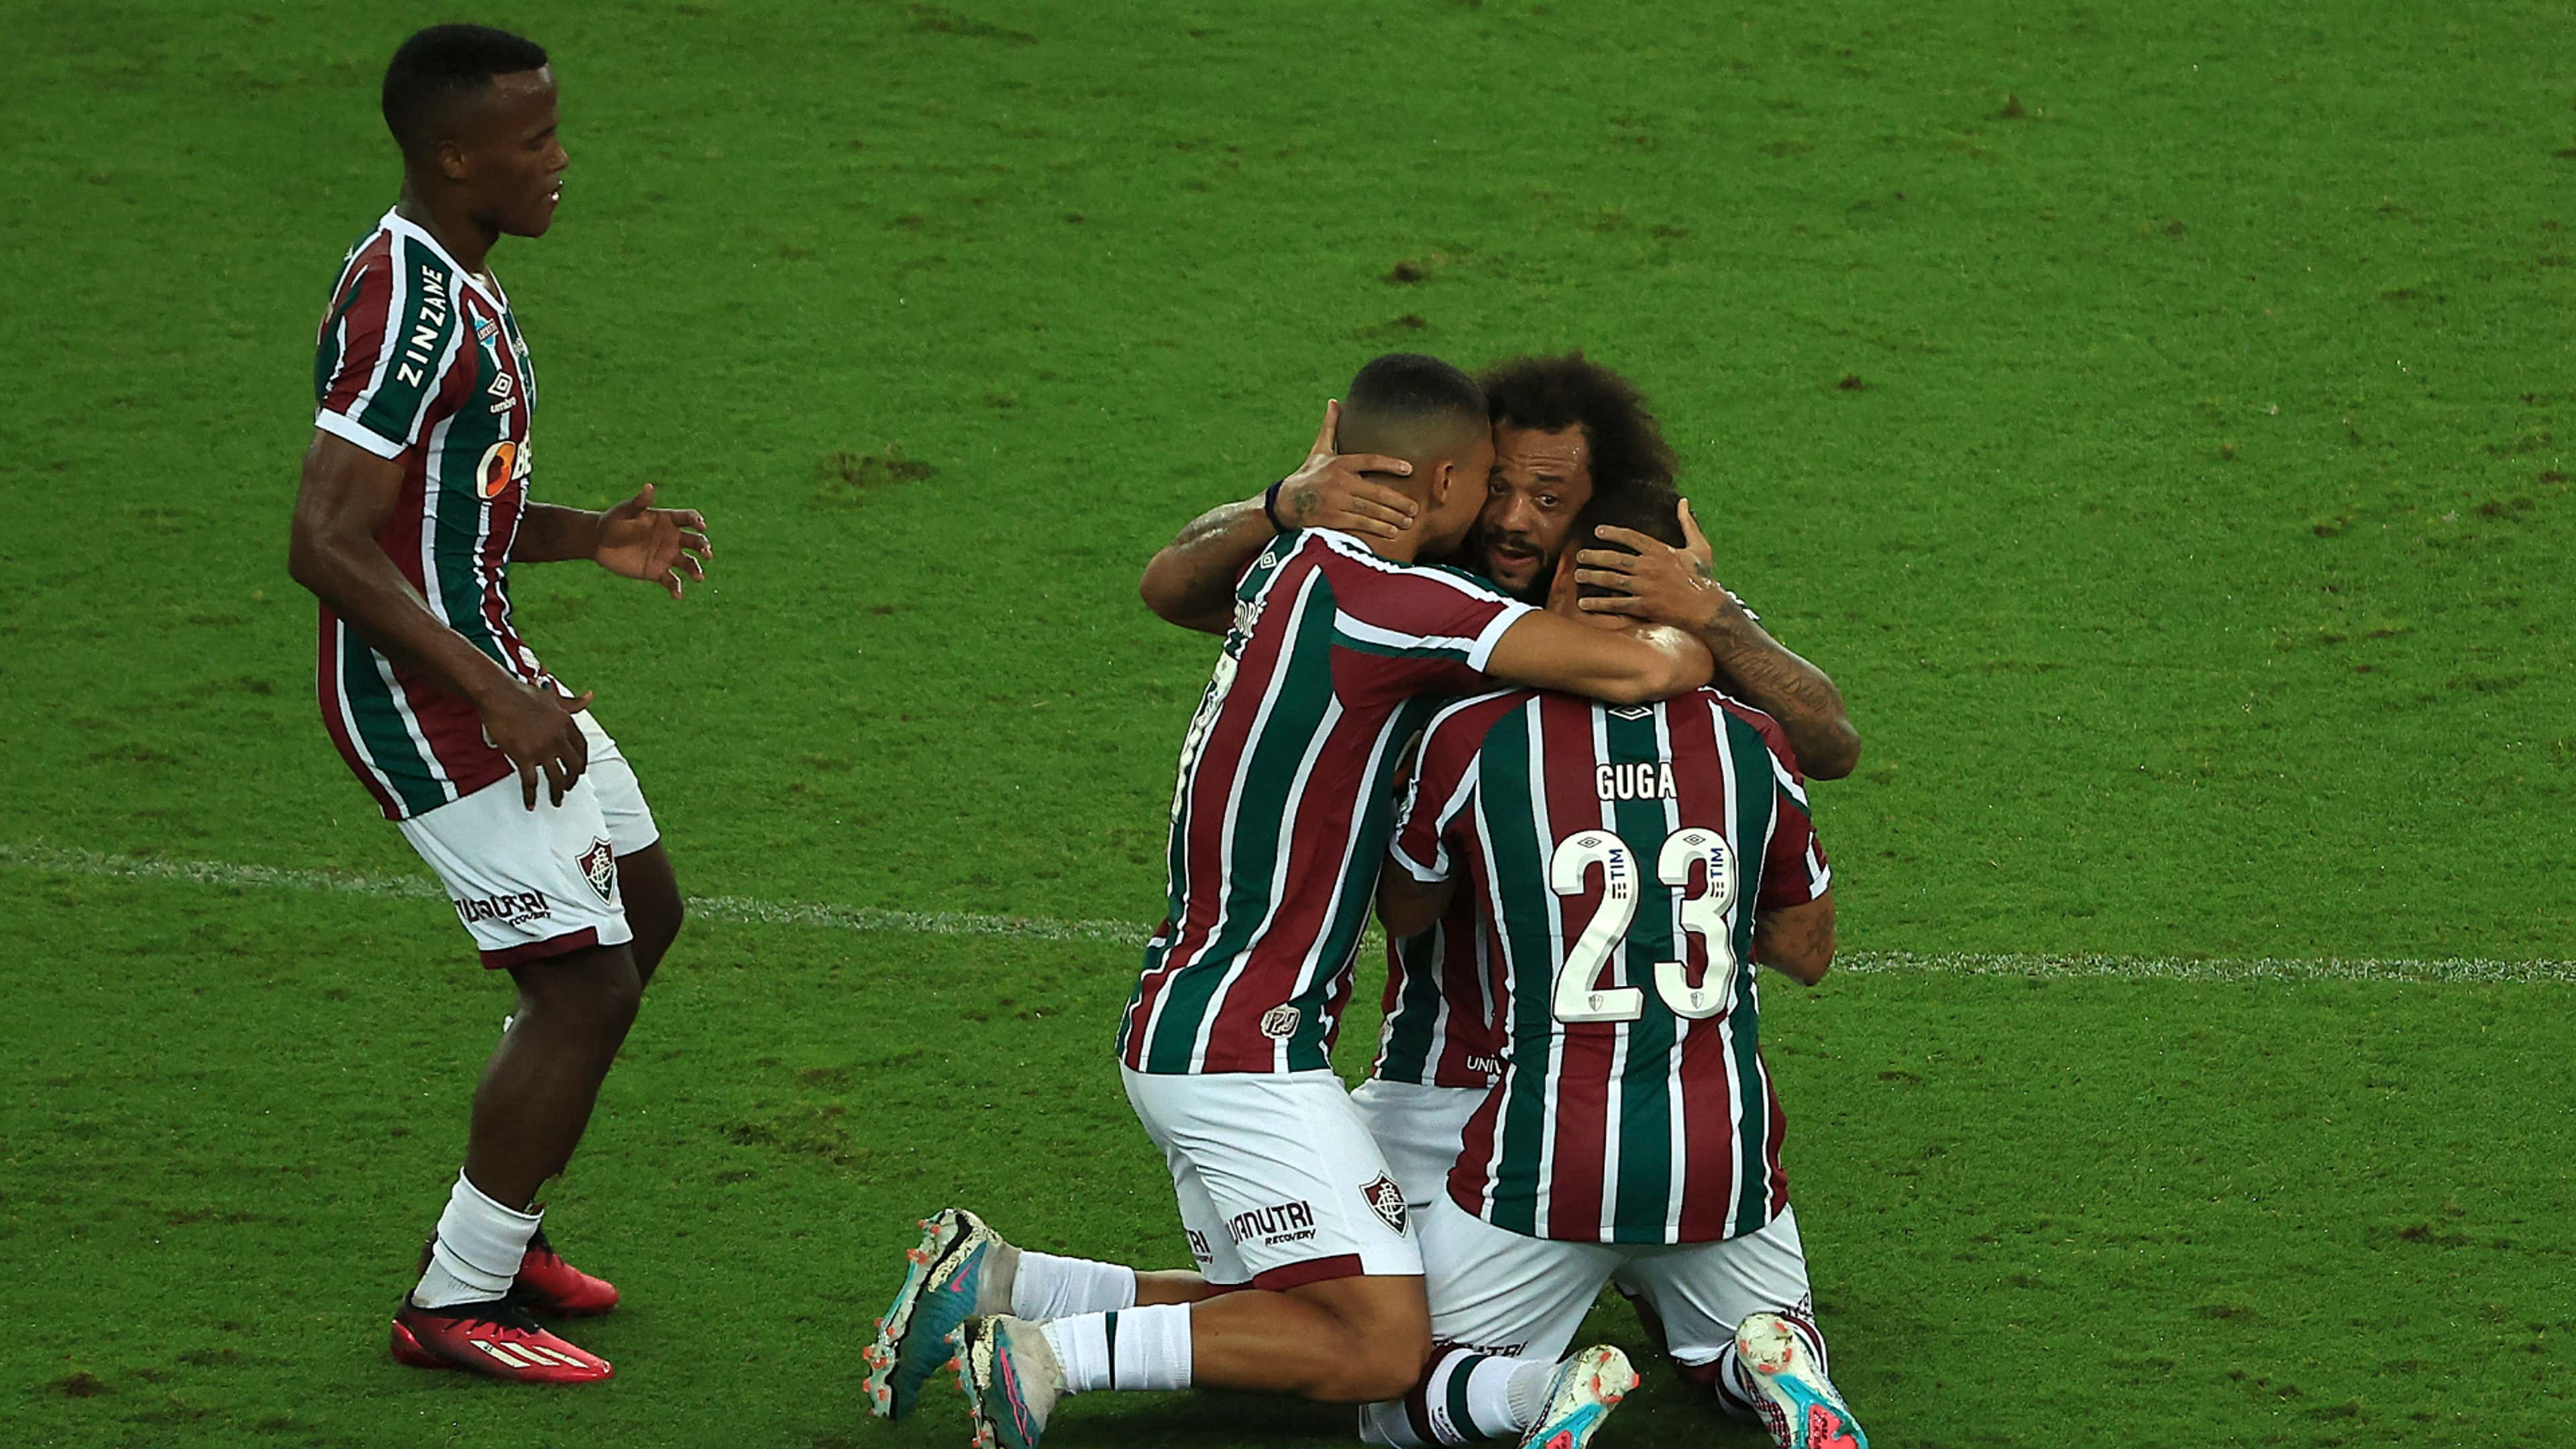 Marcelo convida Cristiano Ronaldo para jogar no Fluminense - Superesportes